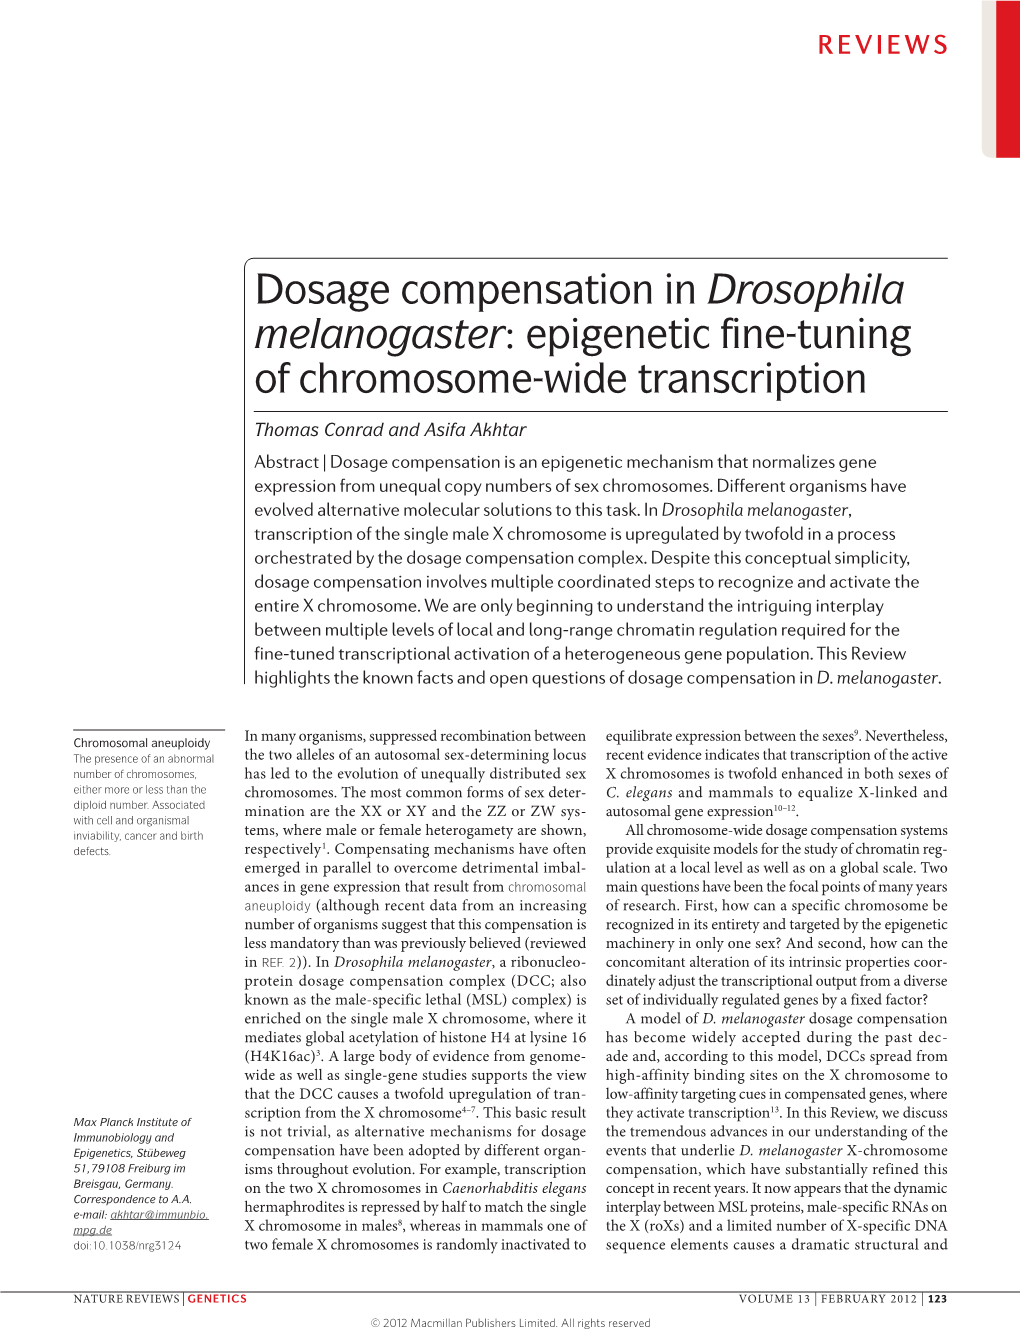 Dosage Compensation in Drosophila Melanogaster: Epigenetic Fine-Tuning of Chromosome-Wide Transcription